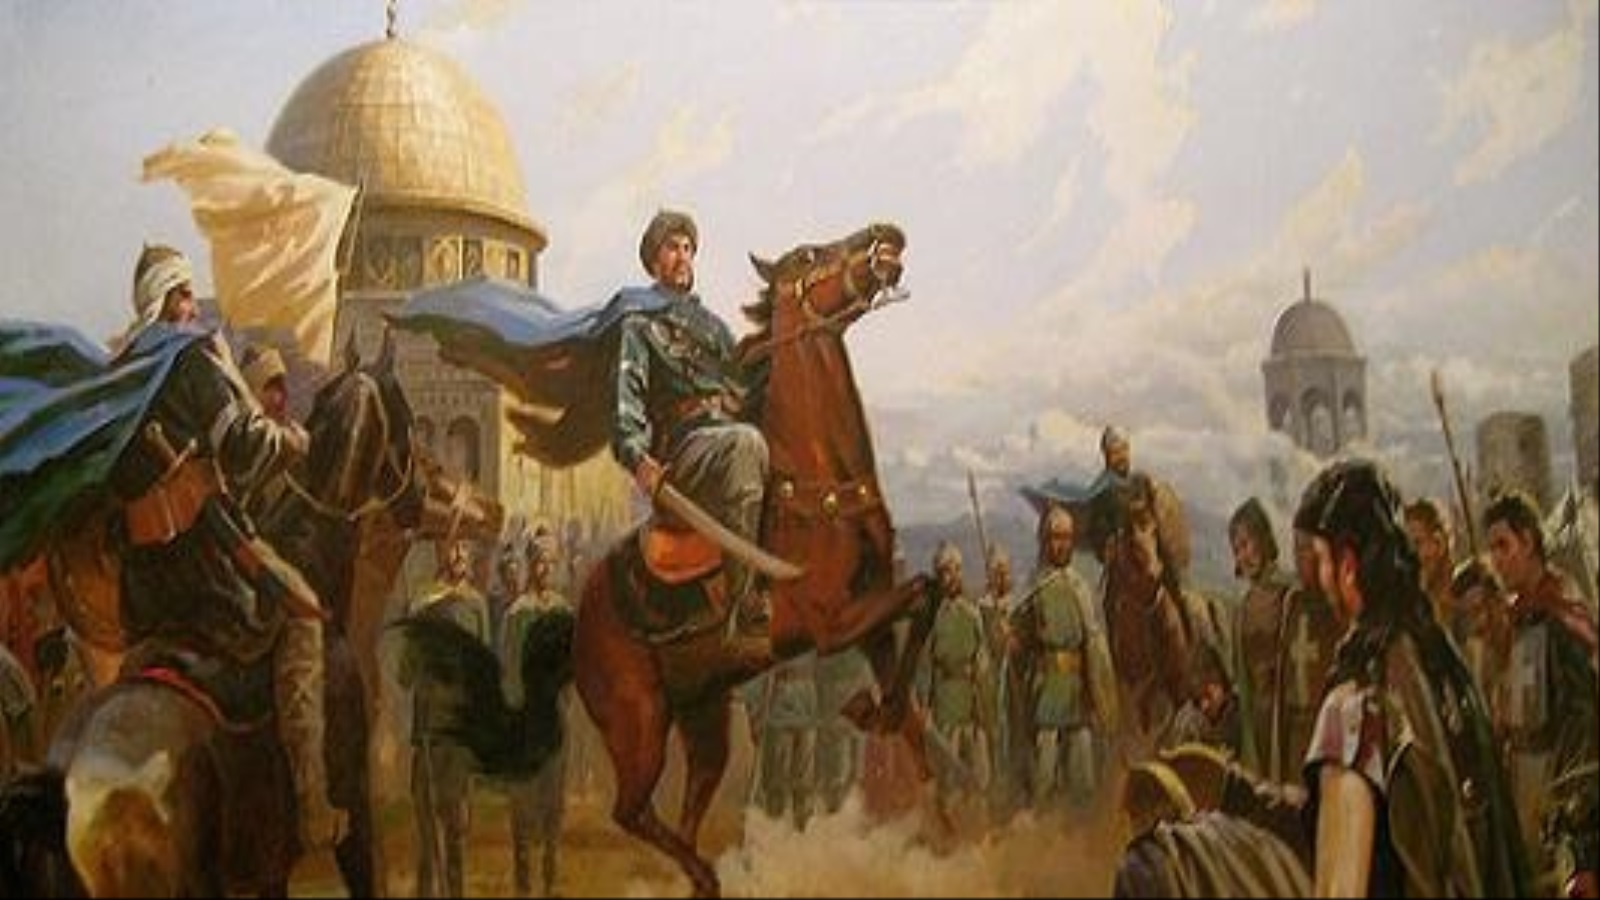 كانت معركة حطين معركة تحرير فلسطين؛ لأنَّها هي التي فتحت طريق النصر إلى بيت المقدس، وباقي فلسطين